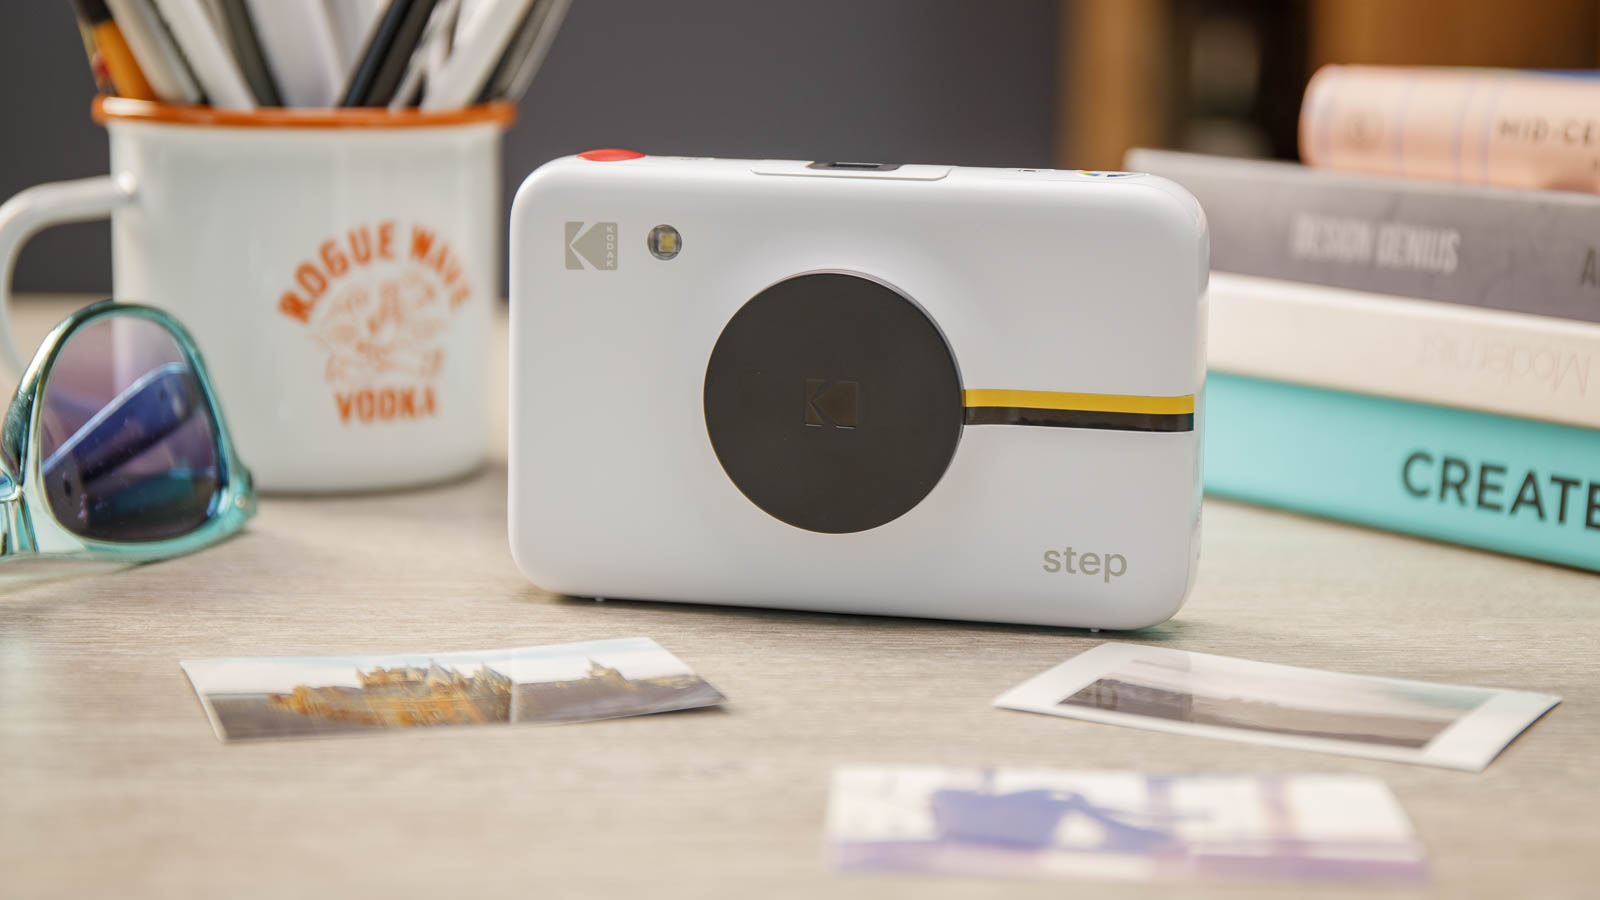 Appareil photo instantané Kodak Step avec capuchon d'objectif